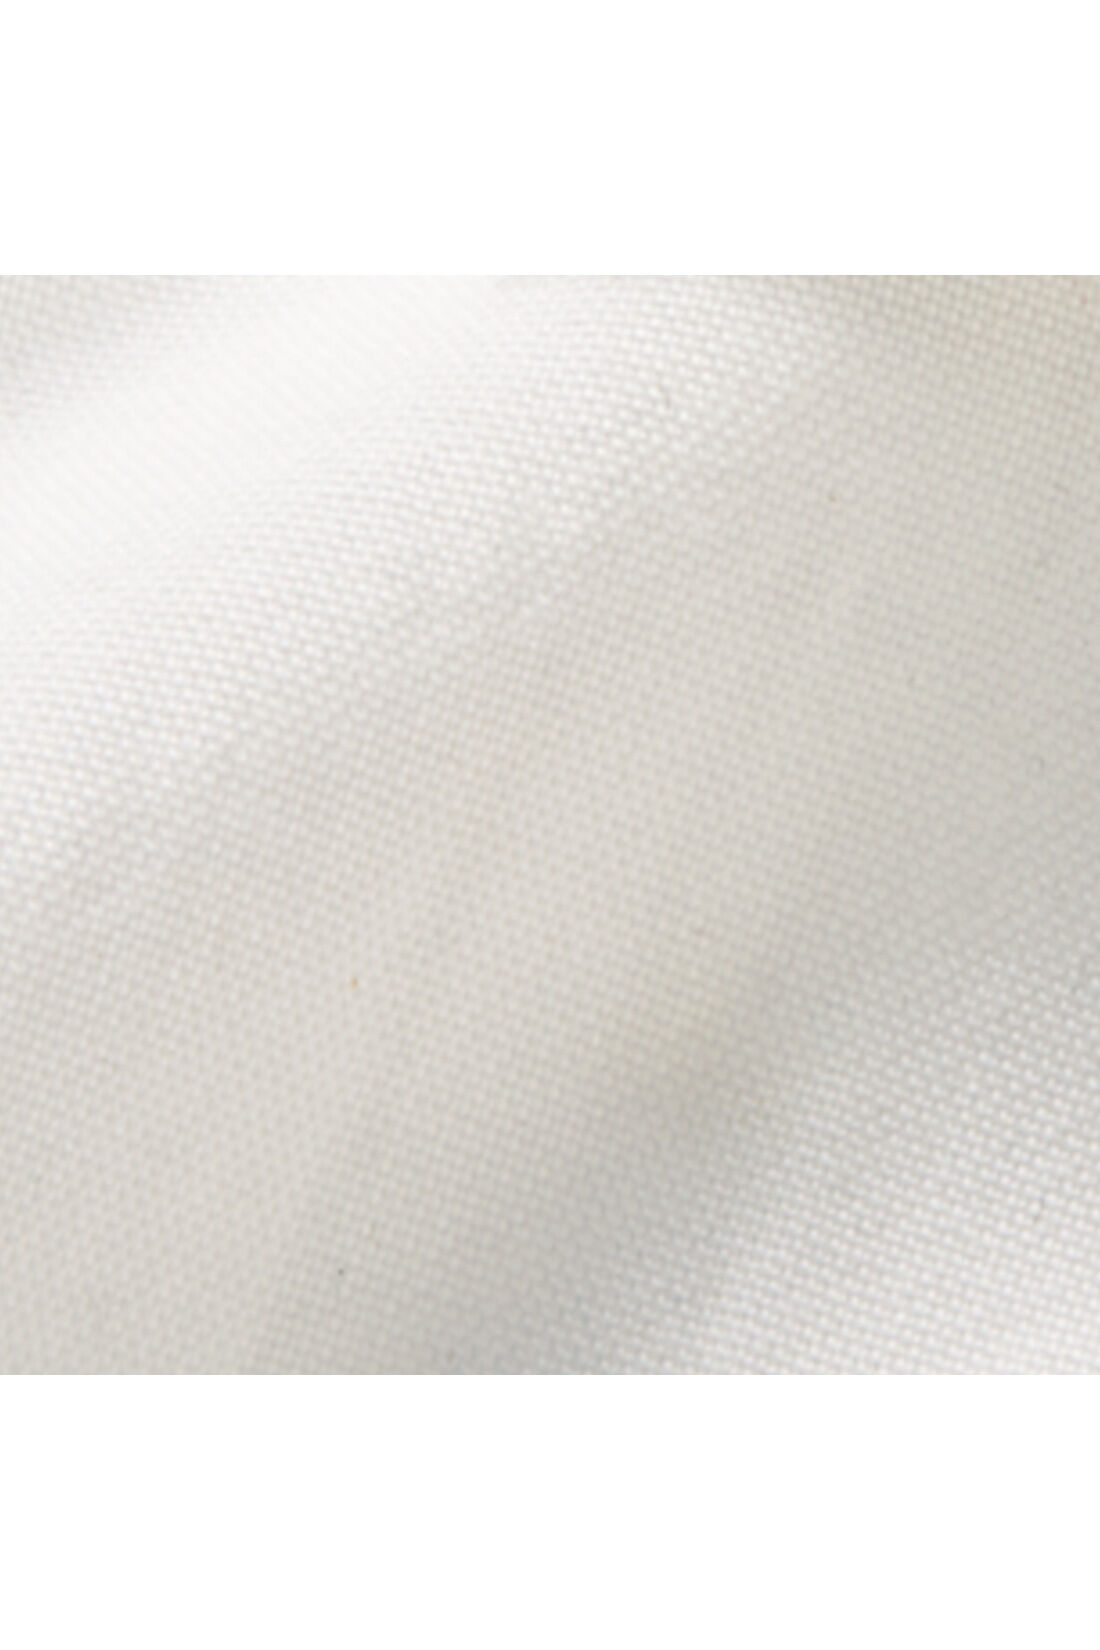 IEDIT|IEDIT[イディット]　レイヤードで体形カバーもかなう すそシャツデザインのホワイトロングカットソートップスの会|すそ部分はきちんと見えるブラウス素材。